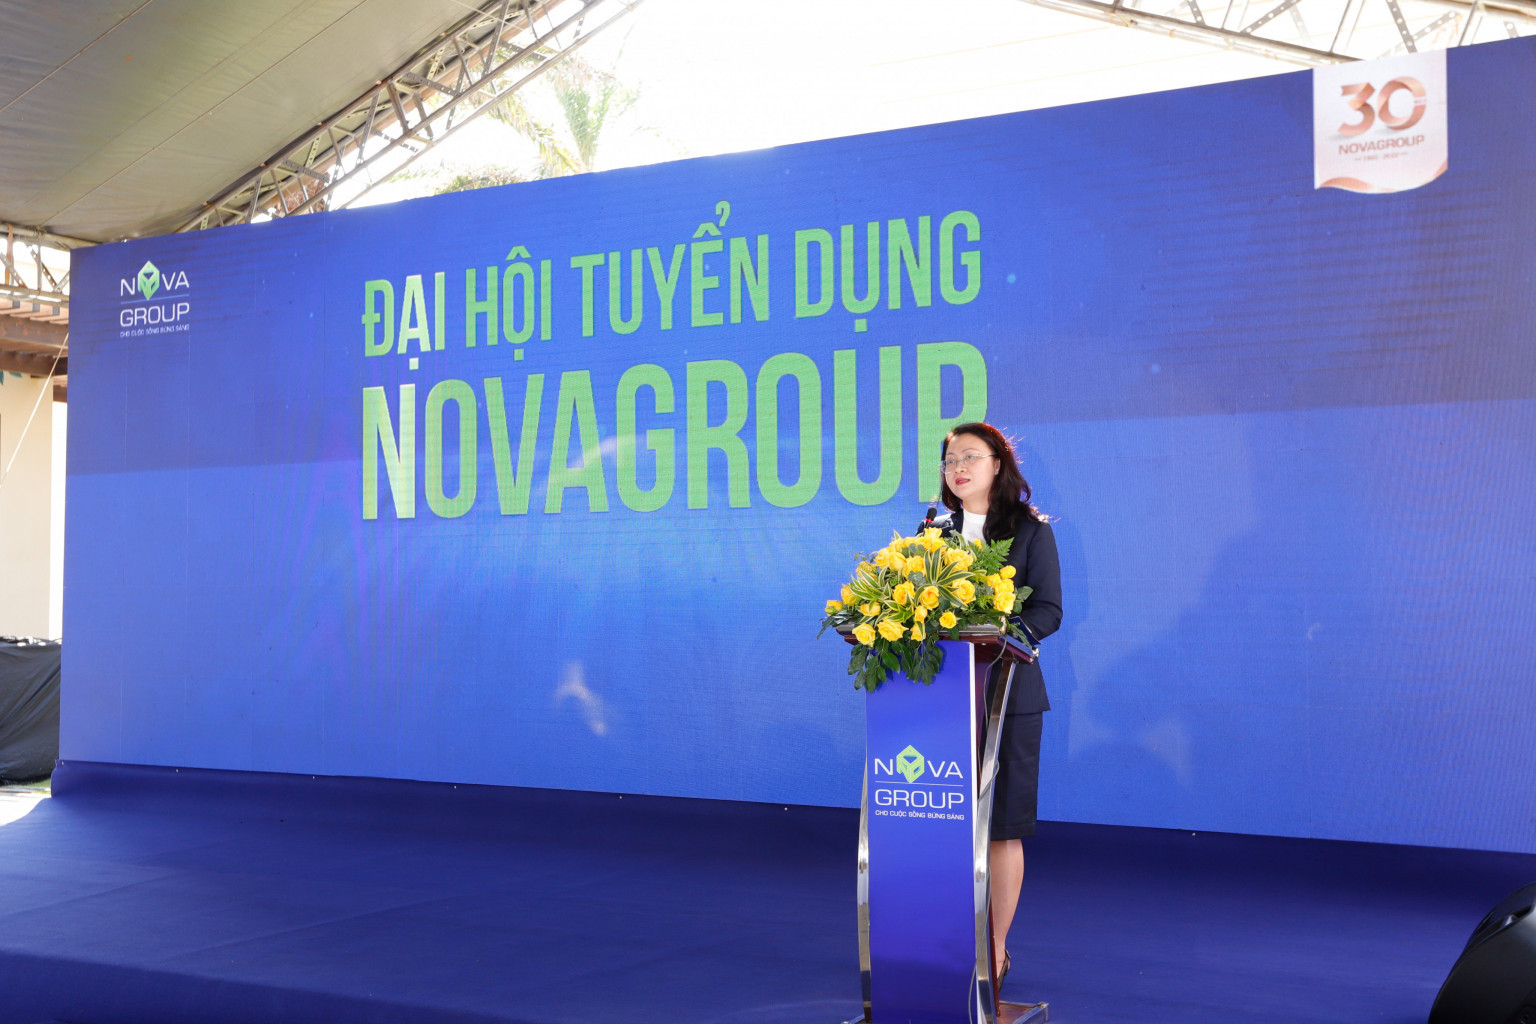 Bà Nguyễn Bạch Kim Vy, PTGĐ NovaGroup phát biểu tại sự kiện.